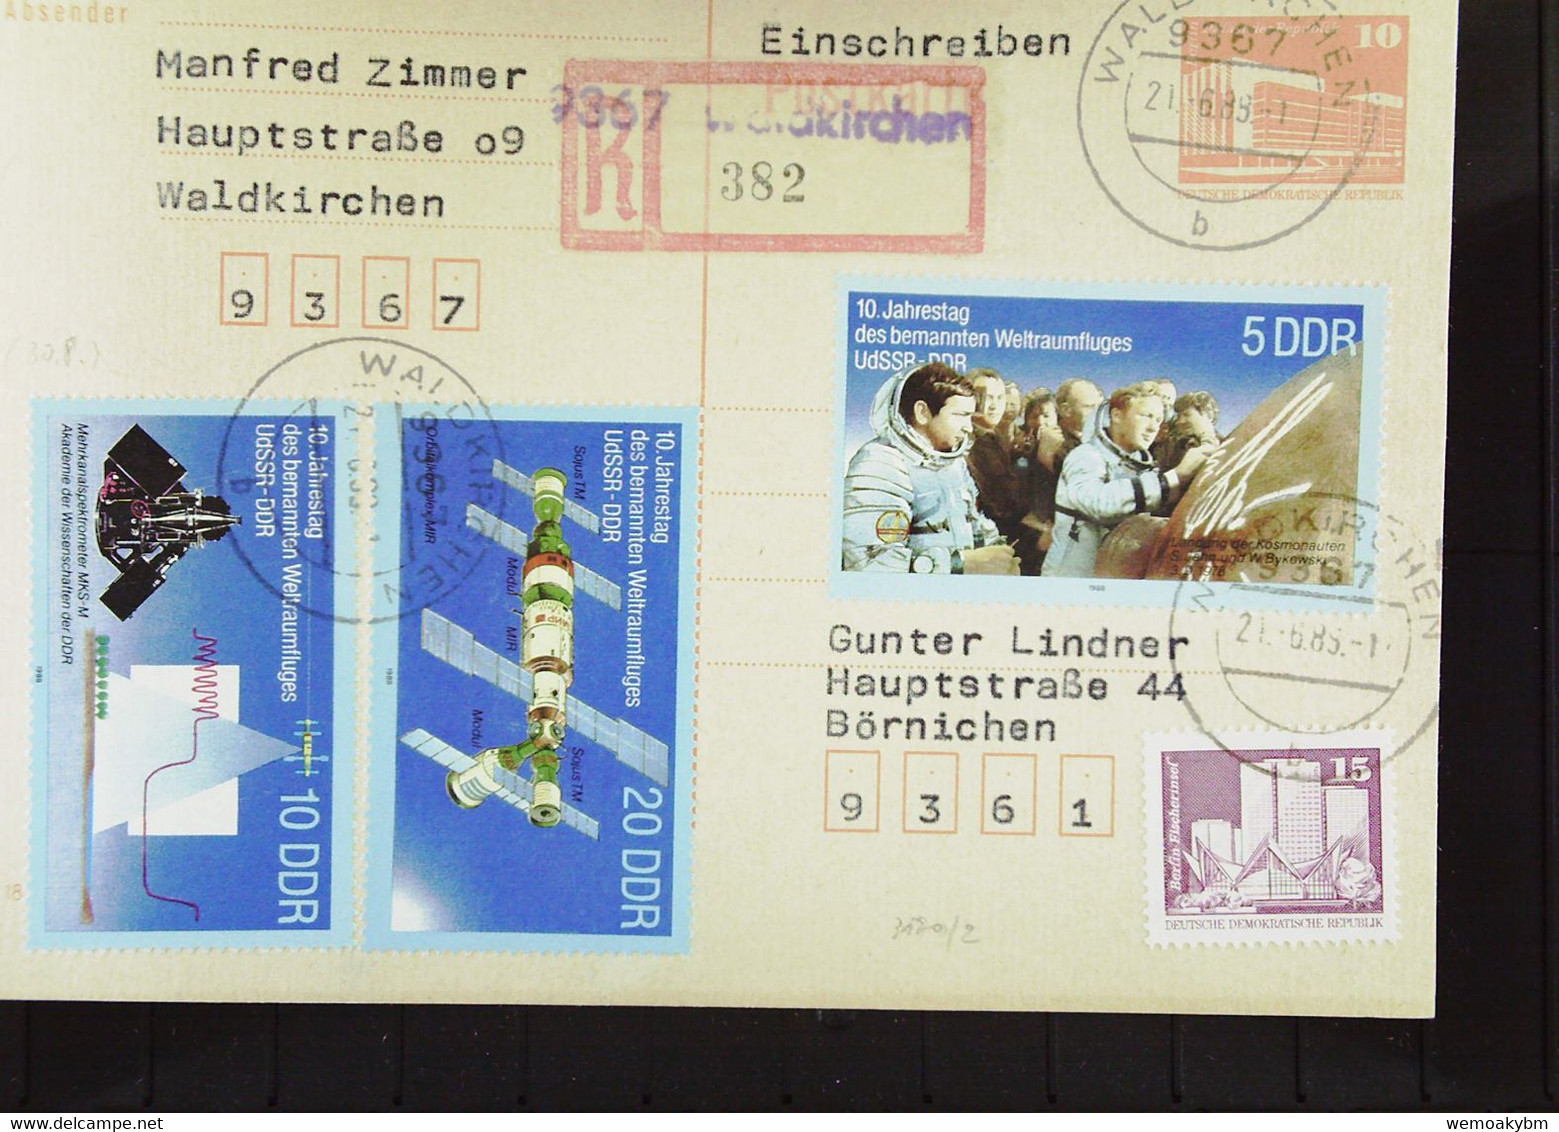 DDR: R-Ganzsachen-Karte Einschreiben Aus 9367 WALDKIRCHEN Mit Aushilfs-R-Zettel (382) Portogenau  21.6.88 Knr: 3190, GA - R-Zettel